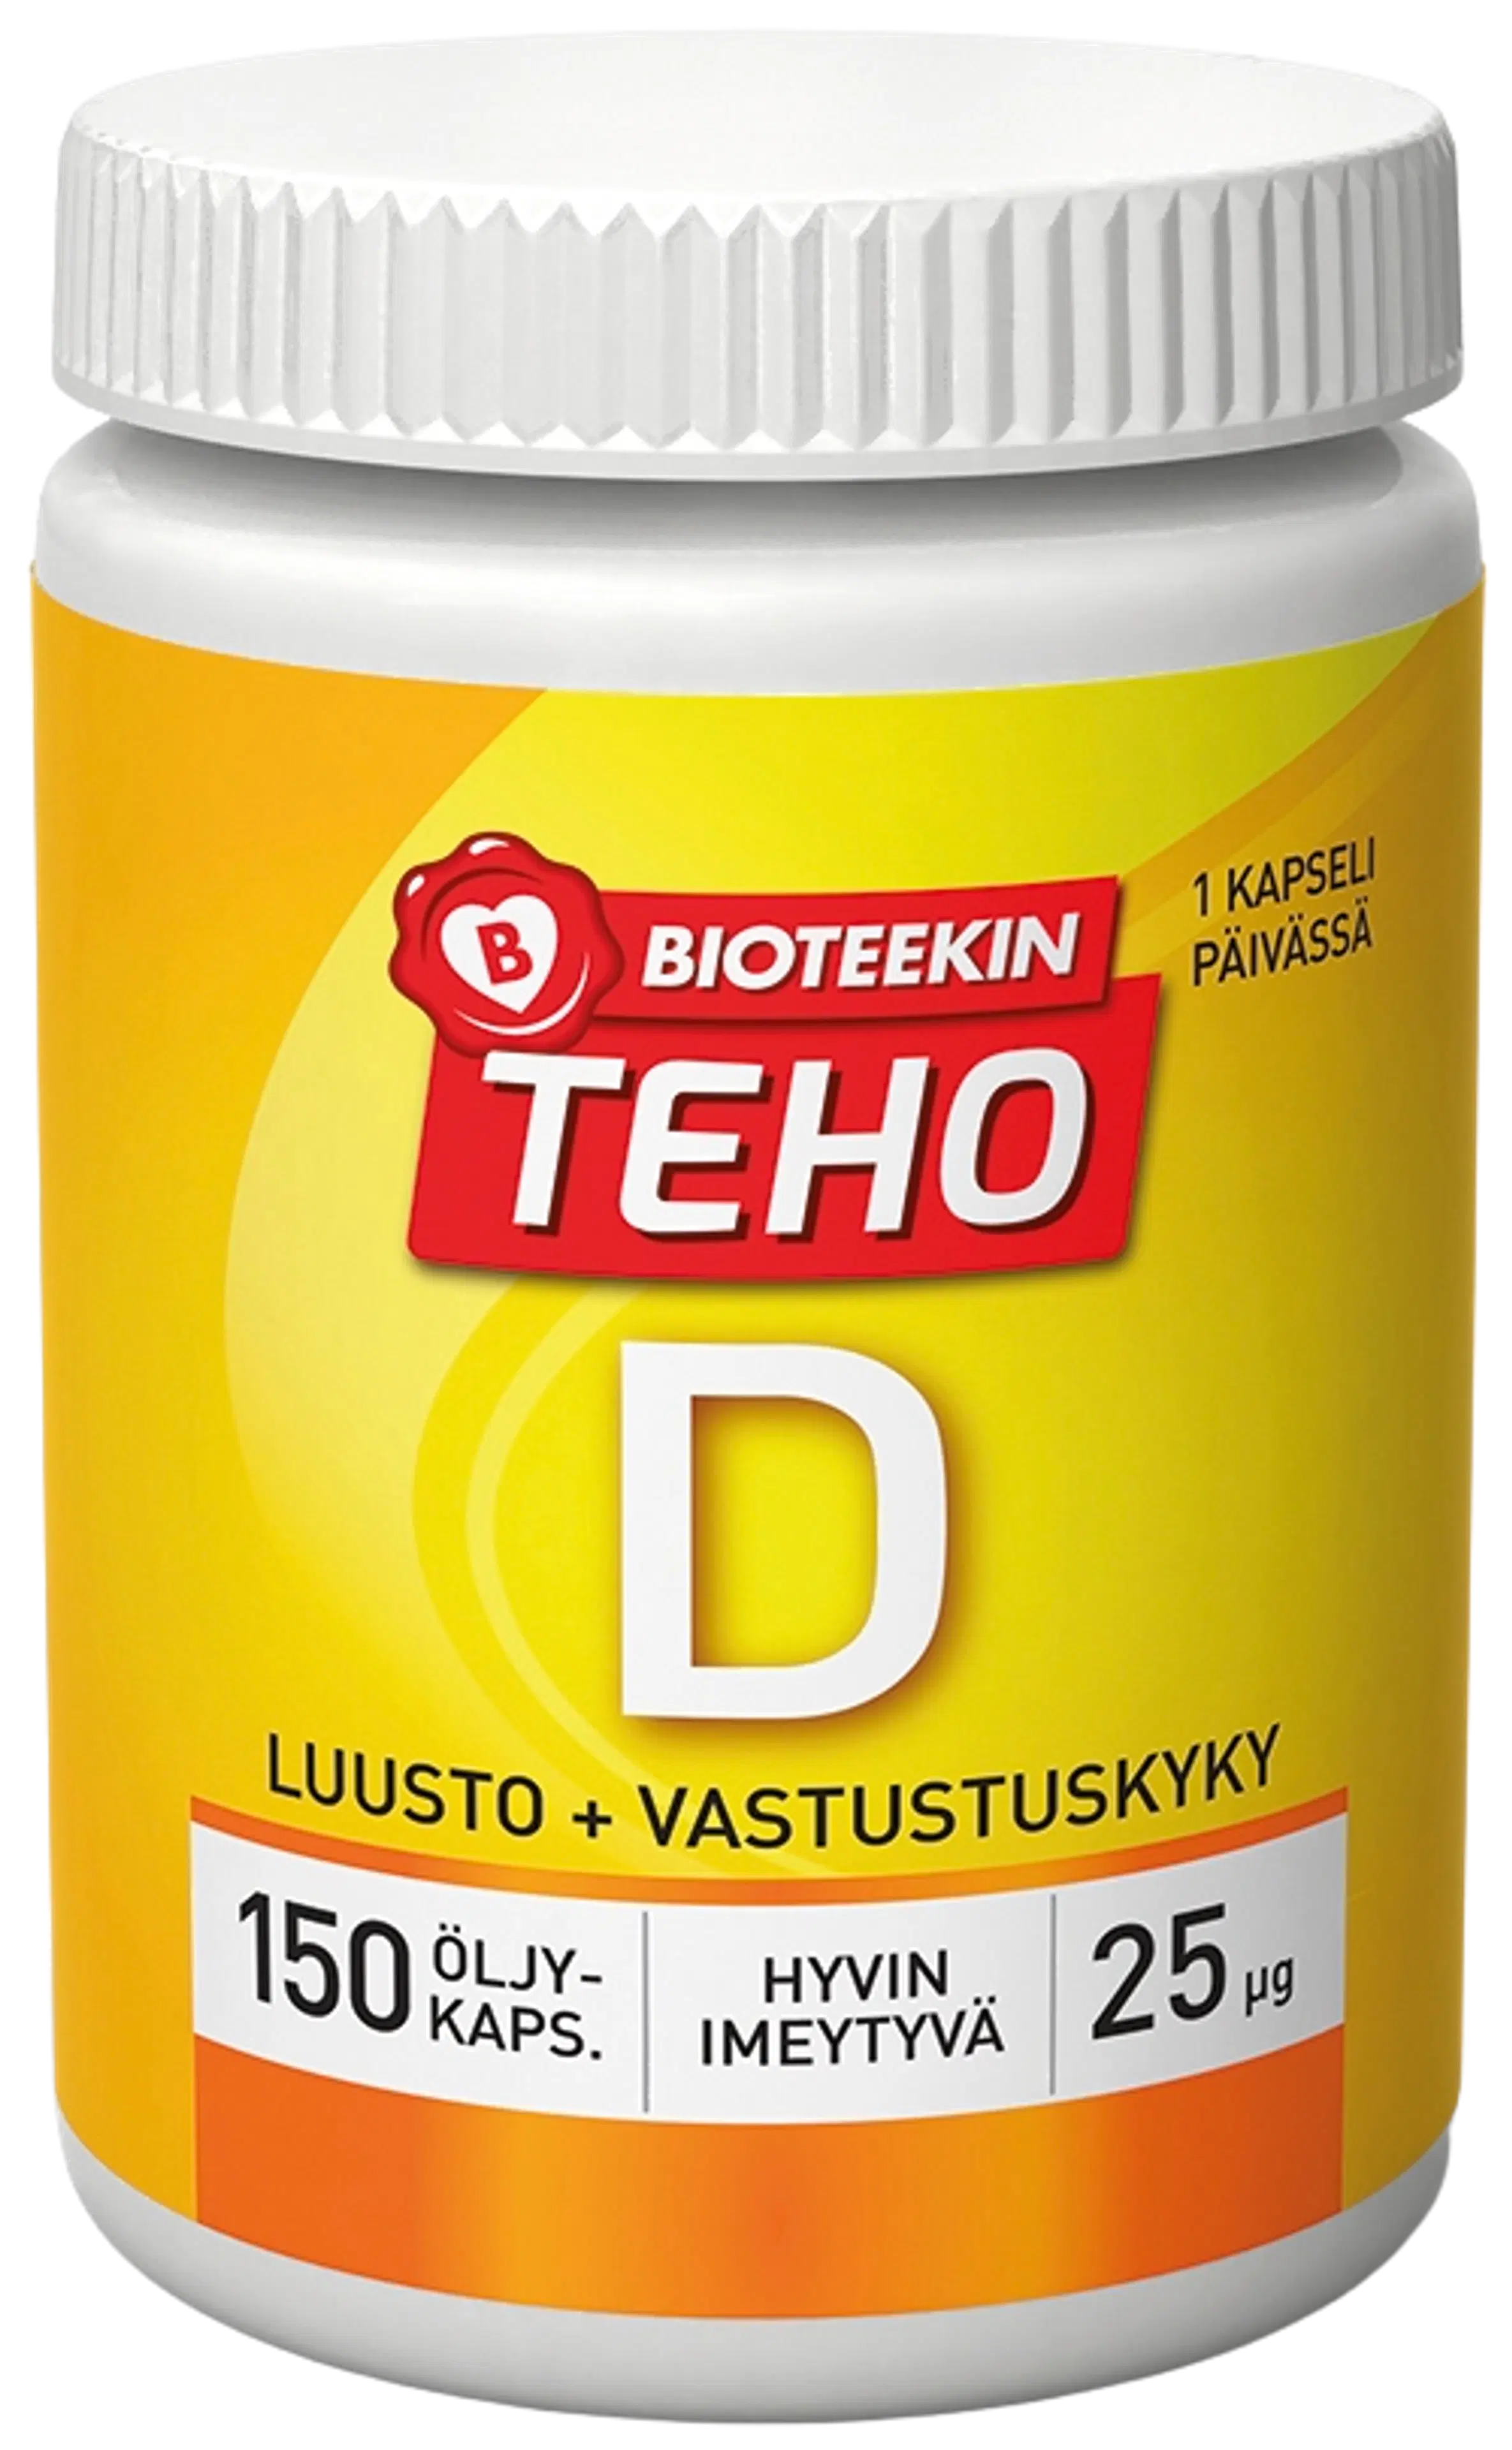 Bioteekki Teho D-vitamiini 25 μg ravintolisä 150 kaps.